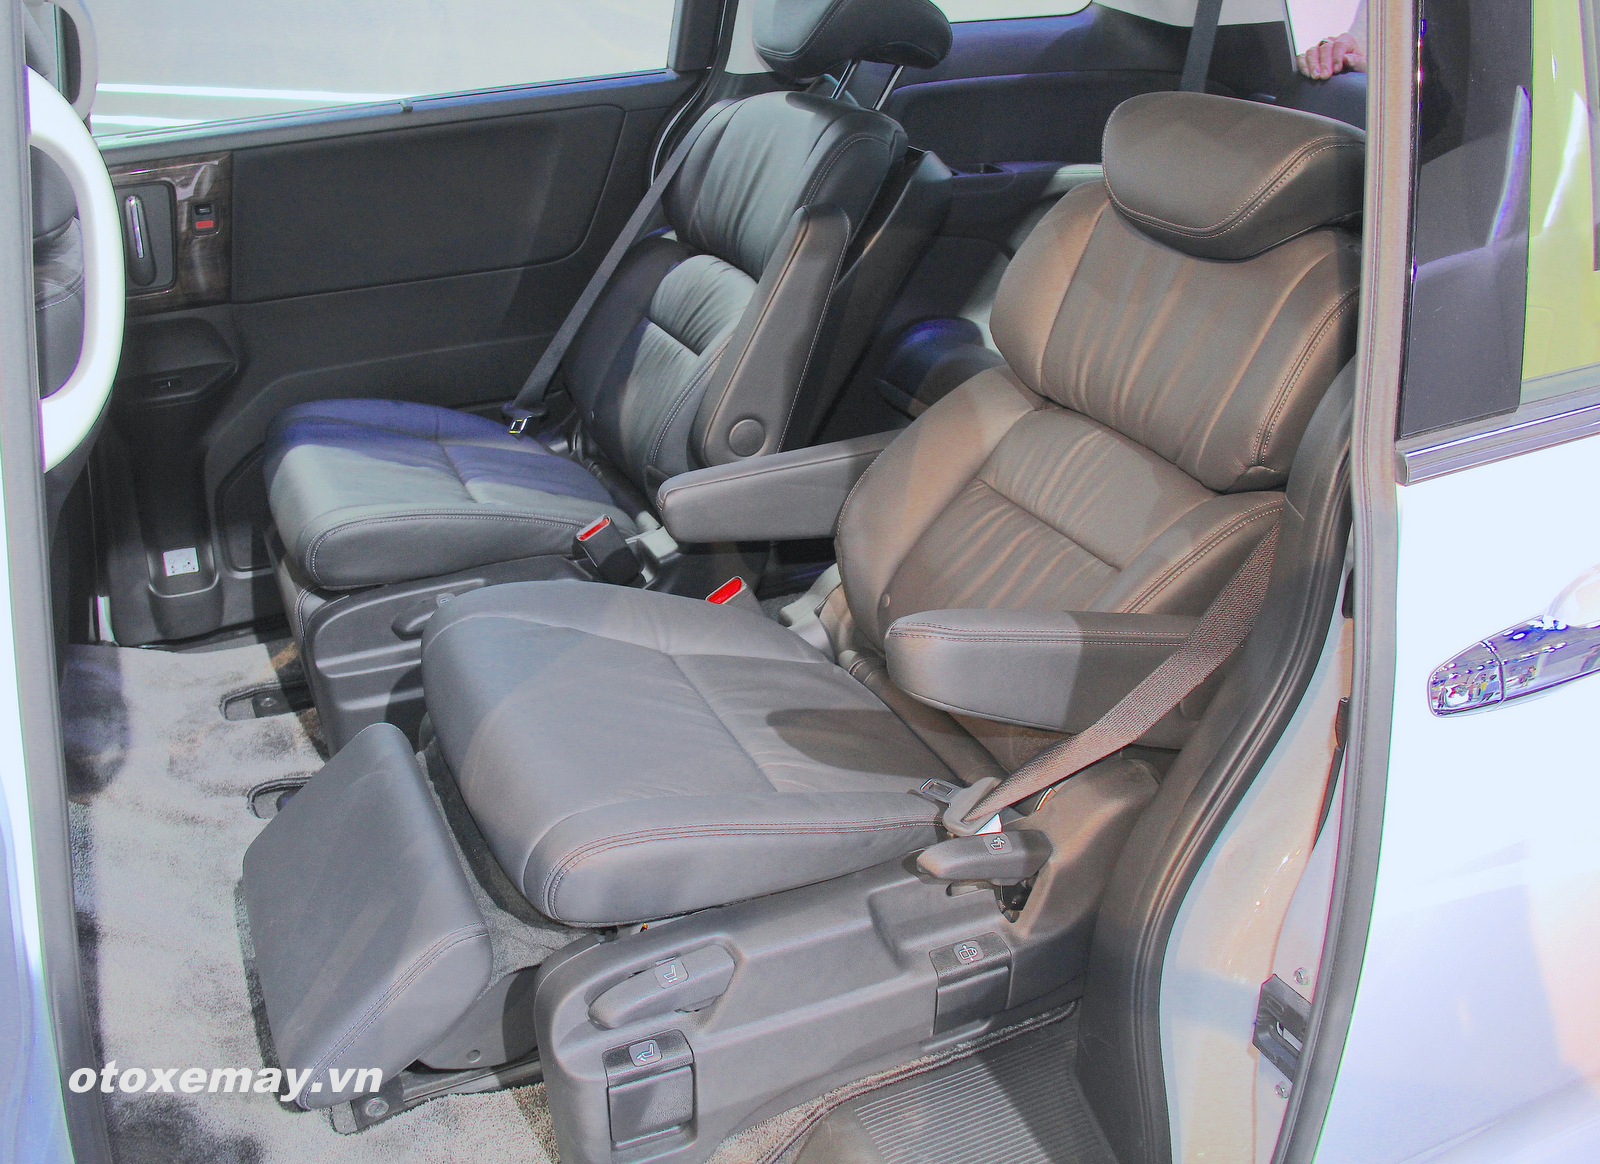 Honda Odyssey tiếp cận khách hàng toàn quốc - ảnh 7